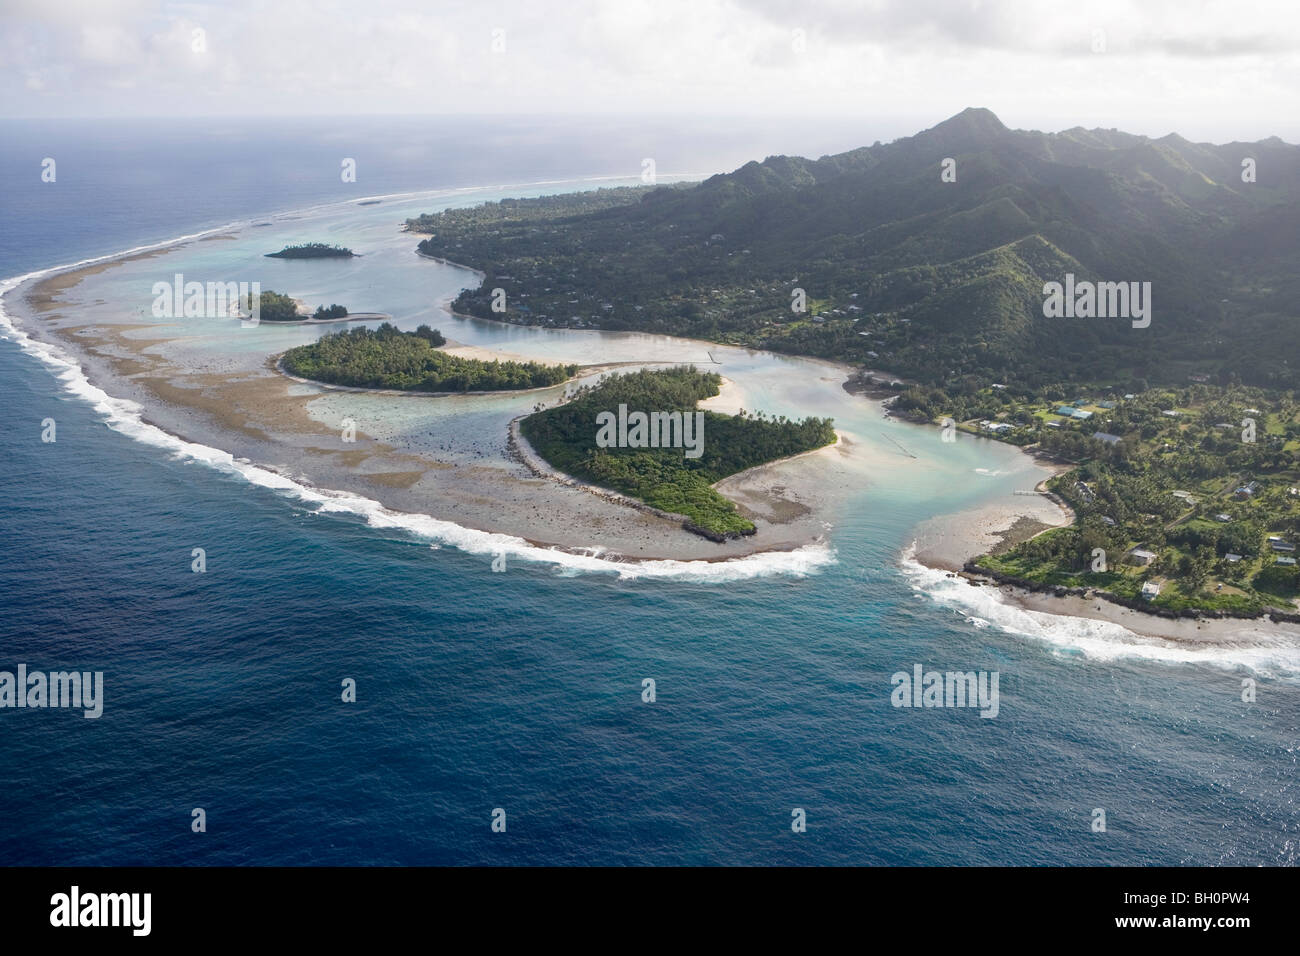 Vista aérea de poco Motu islas en lago Muri, Rarotonga, Islas Cook, Pacífico Sur, Oceanía Foto de stock